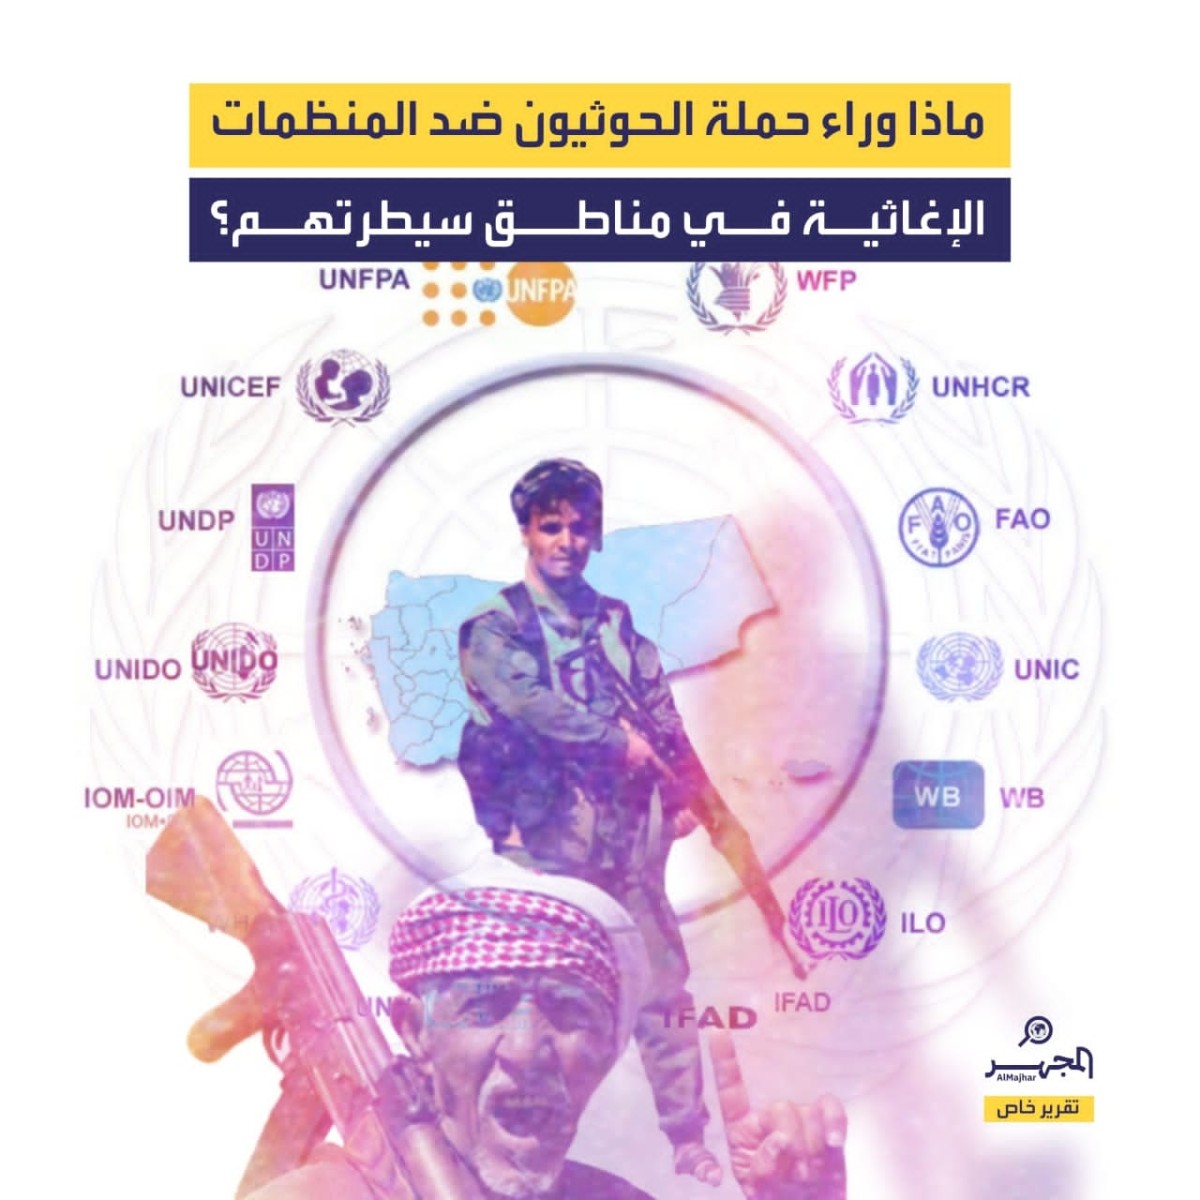 ماذا وراء حملة الحوثيون ضد المنظمات الإغاثية في مناطق سيطرتهم؟ (تقرير خاص)